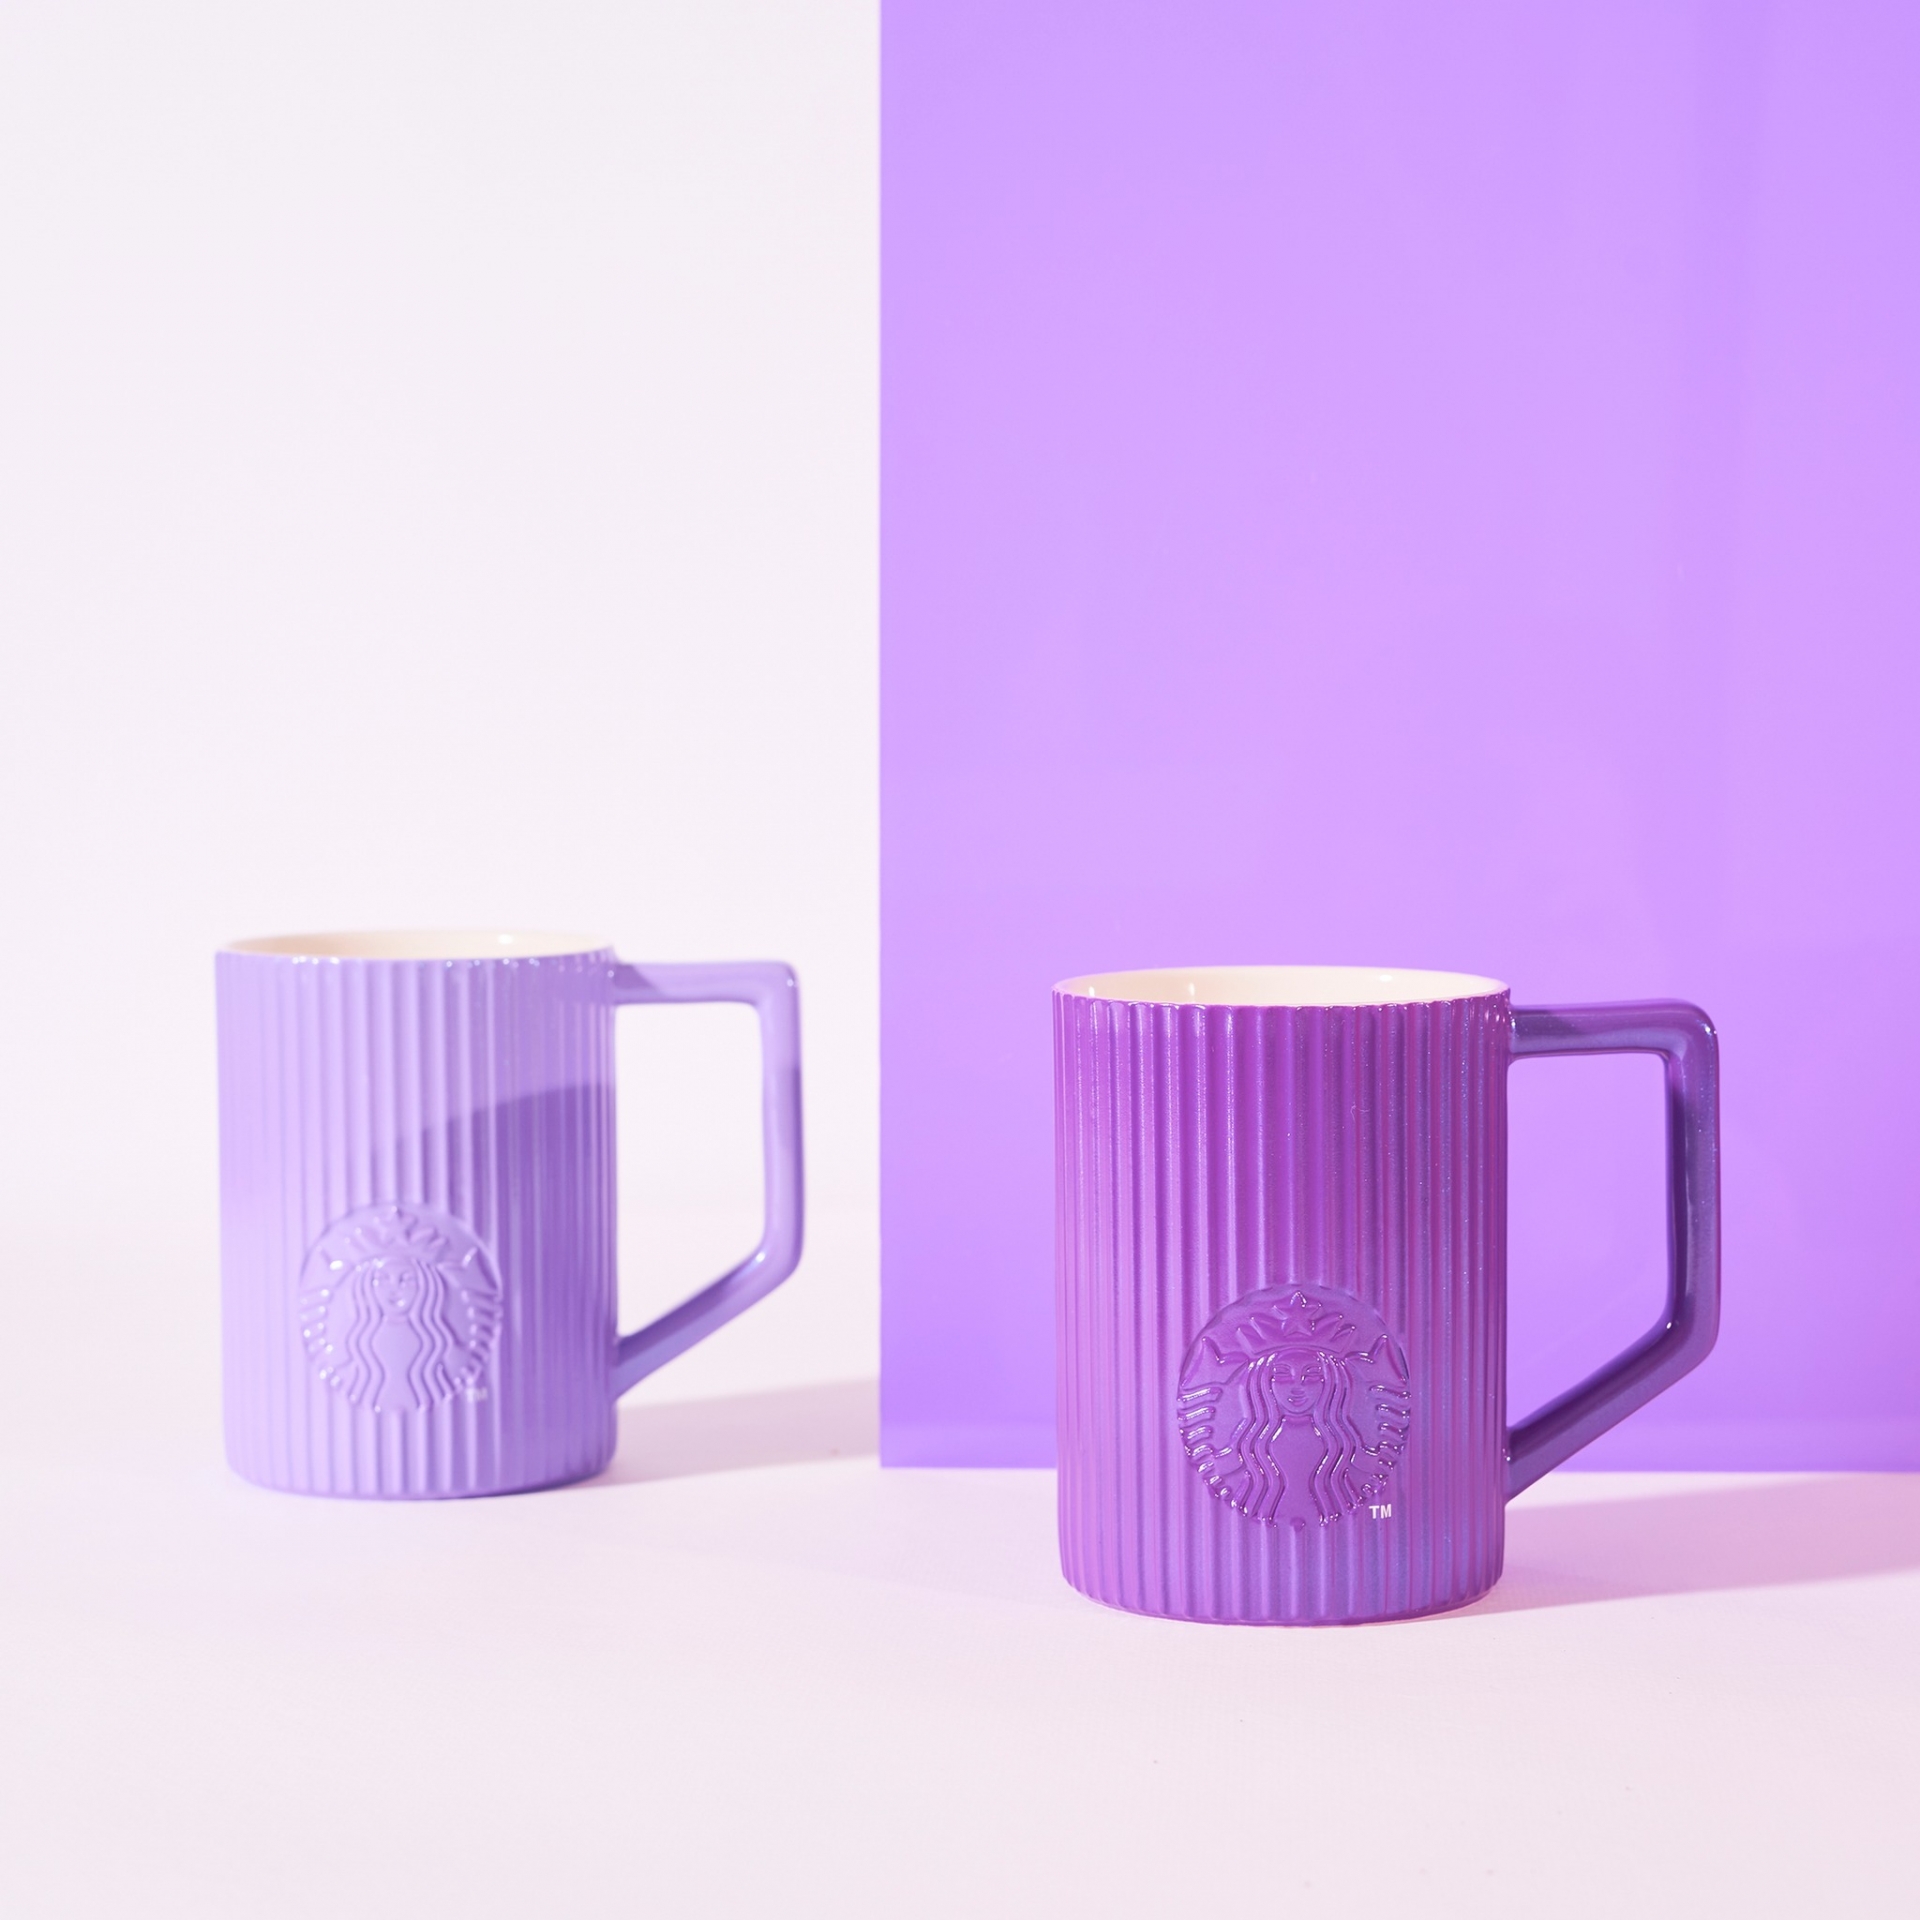 Phiên bản cốc mug có 2 màu tím đậm và tím nhạt với giá 380 ngàn đồng.